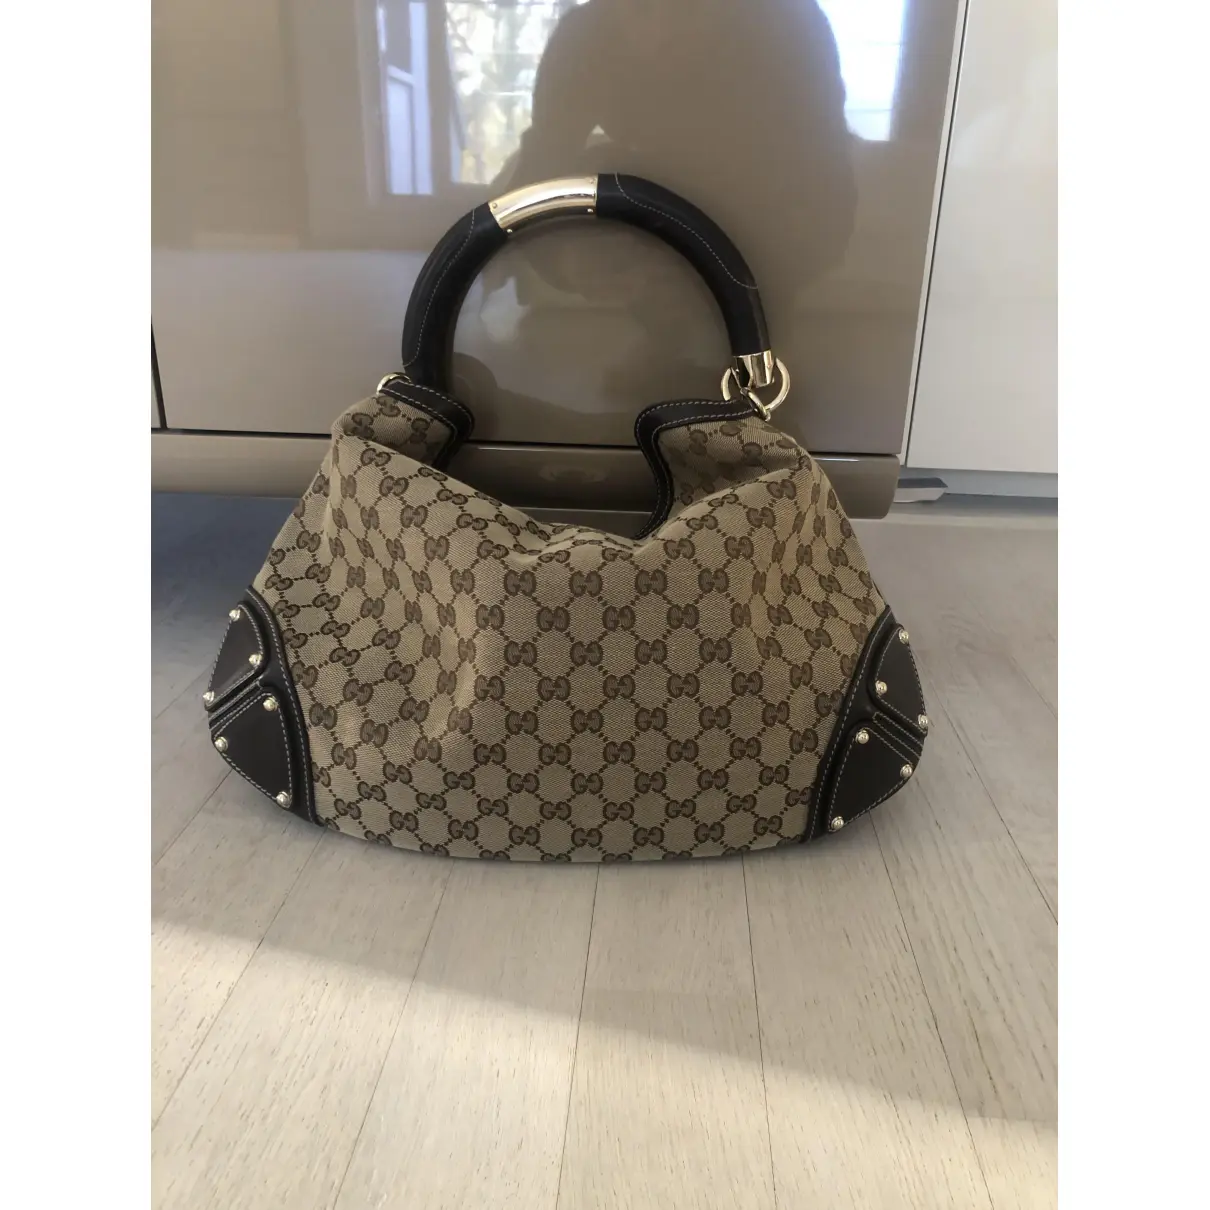 Buy Gucci Indy cloth handbag online